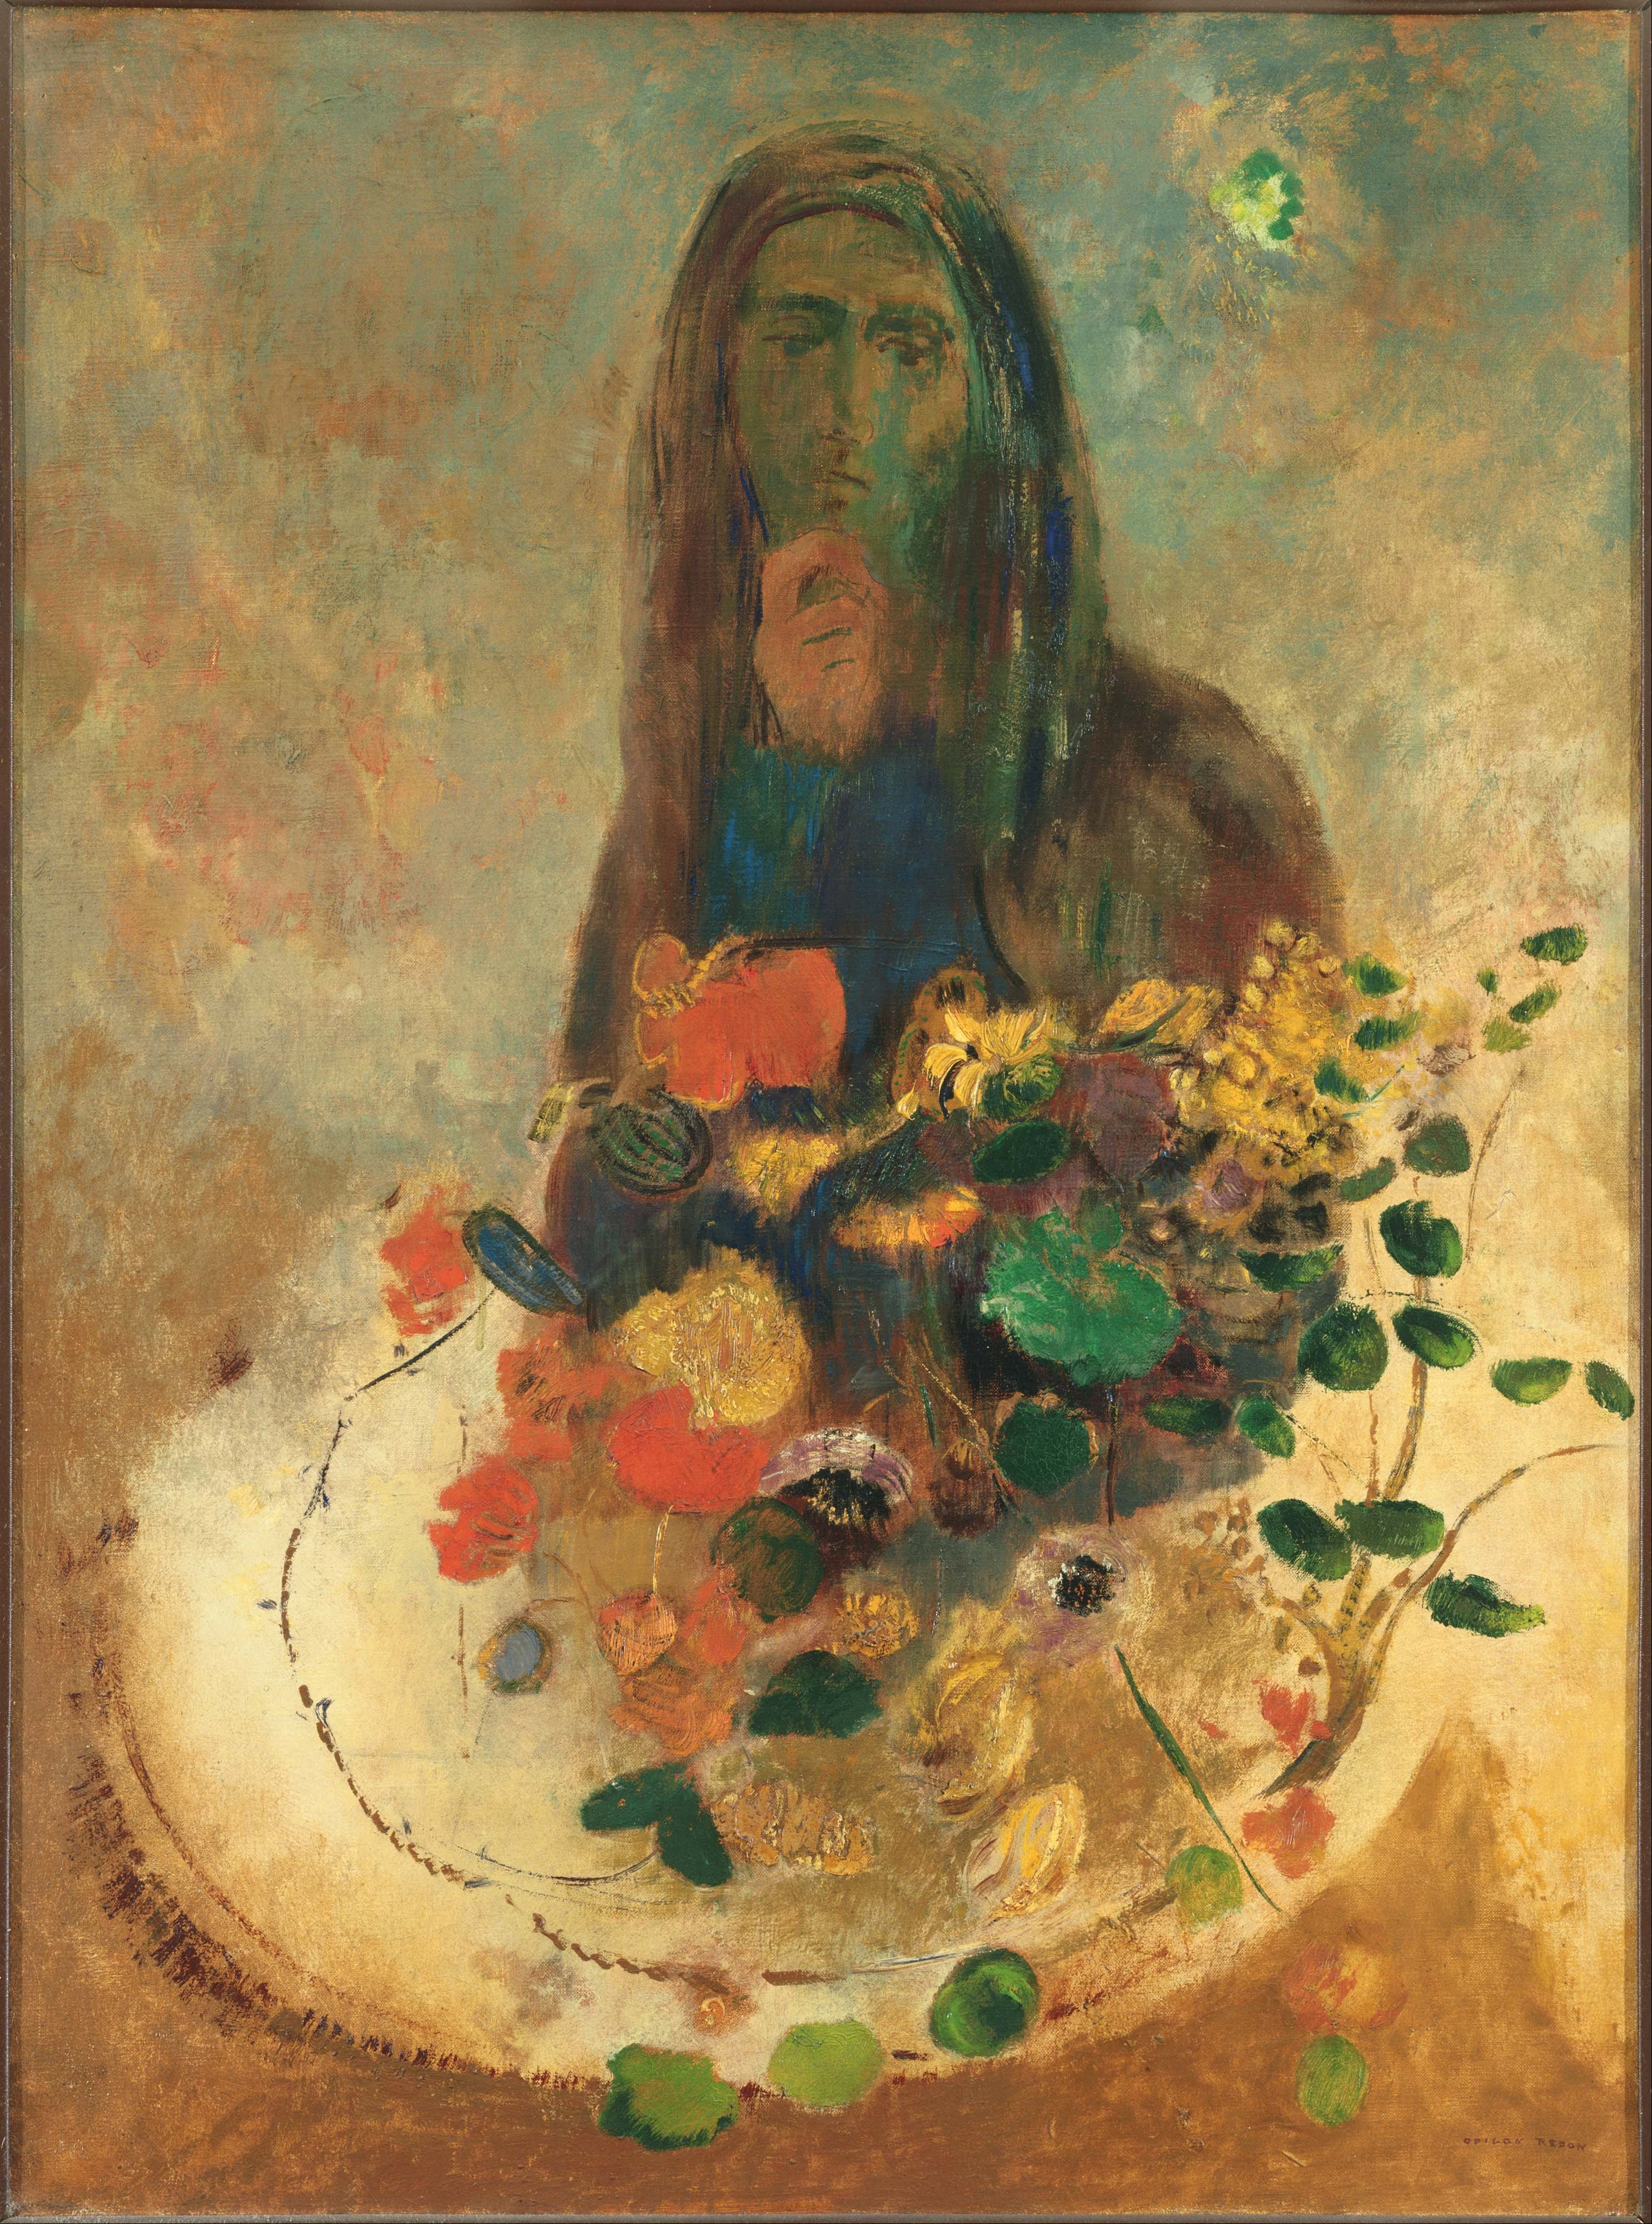 Misterio by Odilon Redon - circa 1910 - 21.38 x 28.75 in Colección Phillips